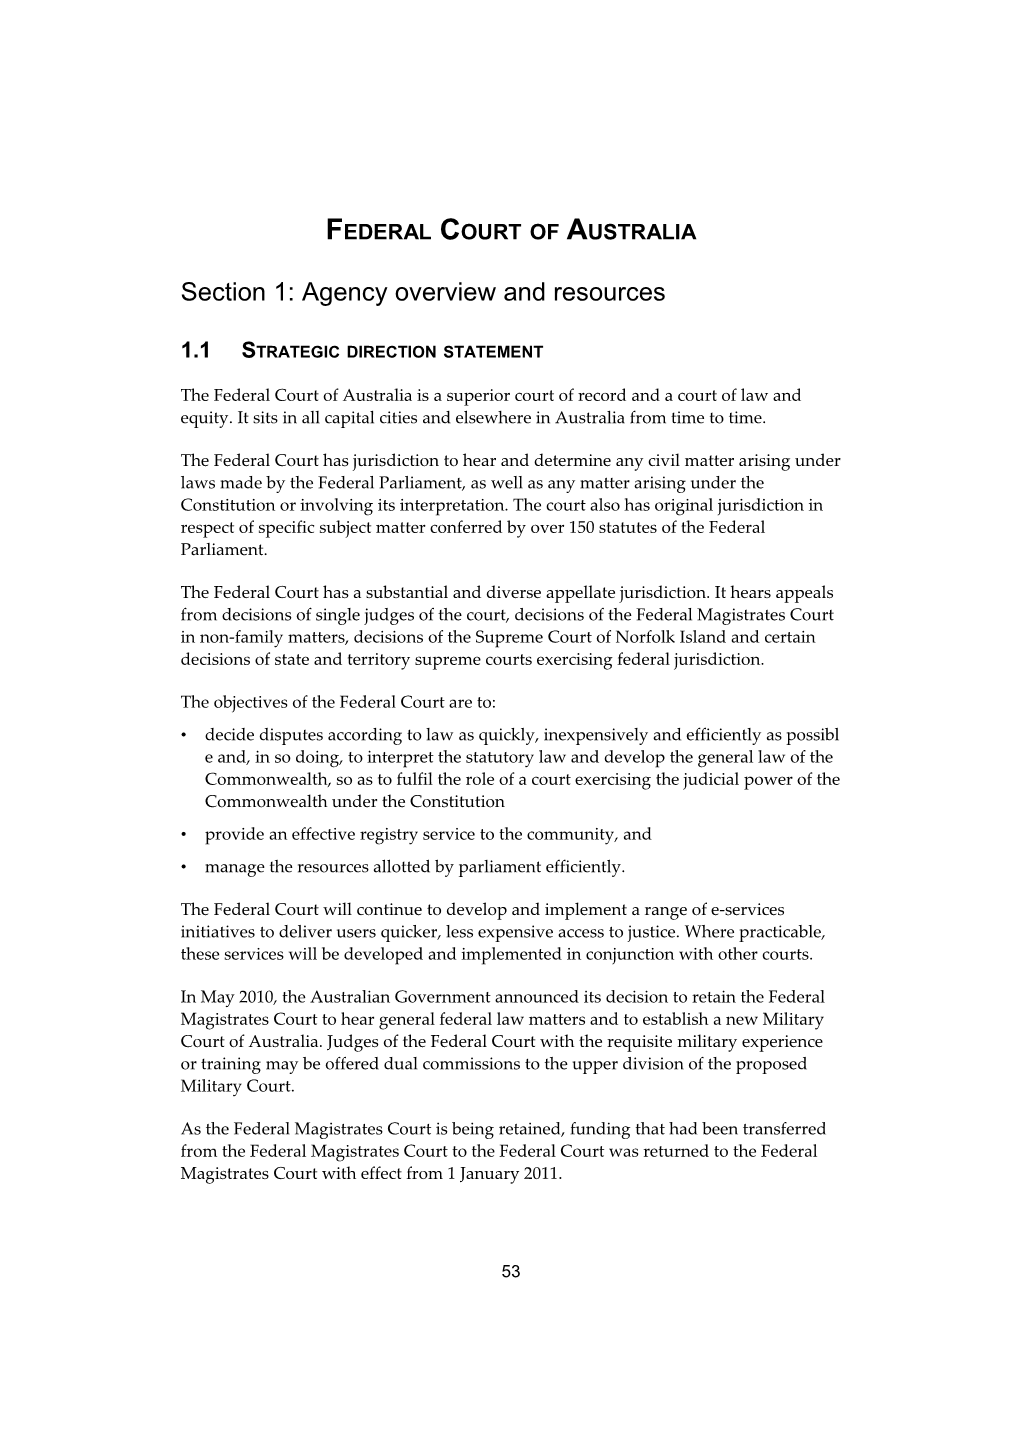 Portfolio Budget Statements 2011-12 - Federal Court